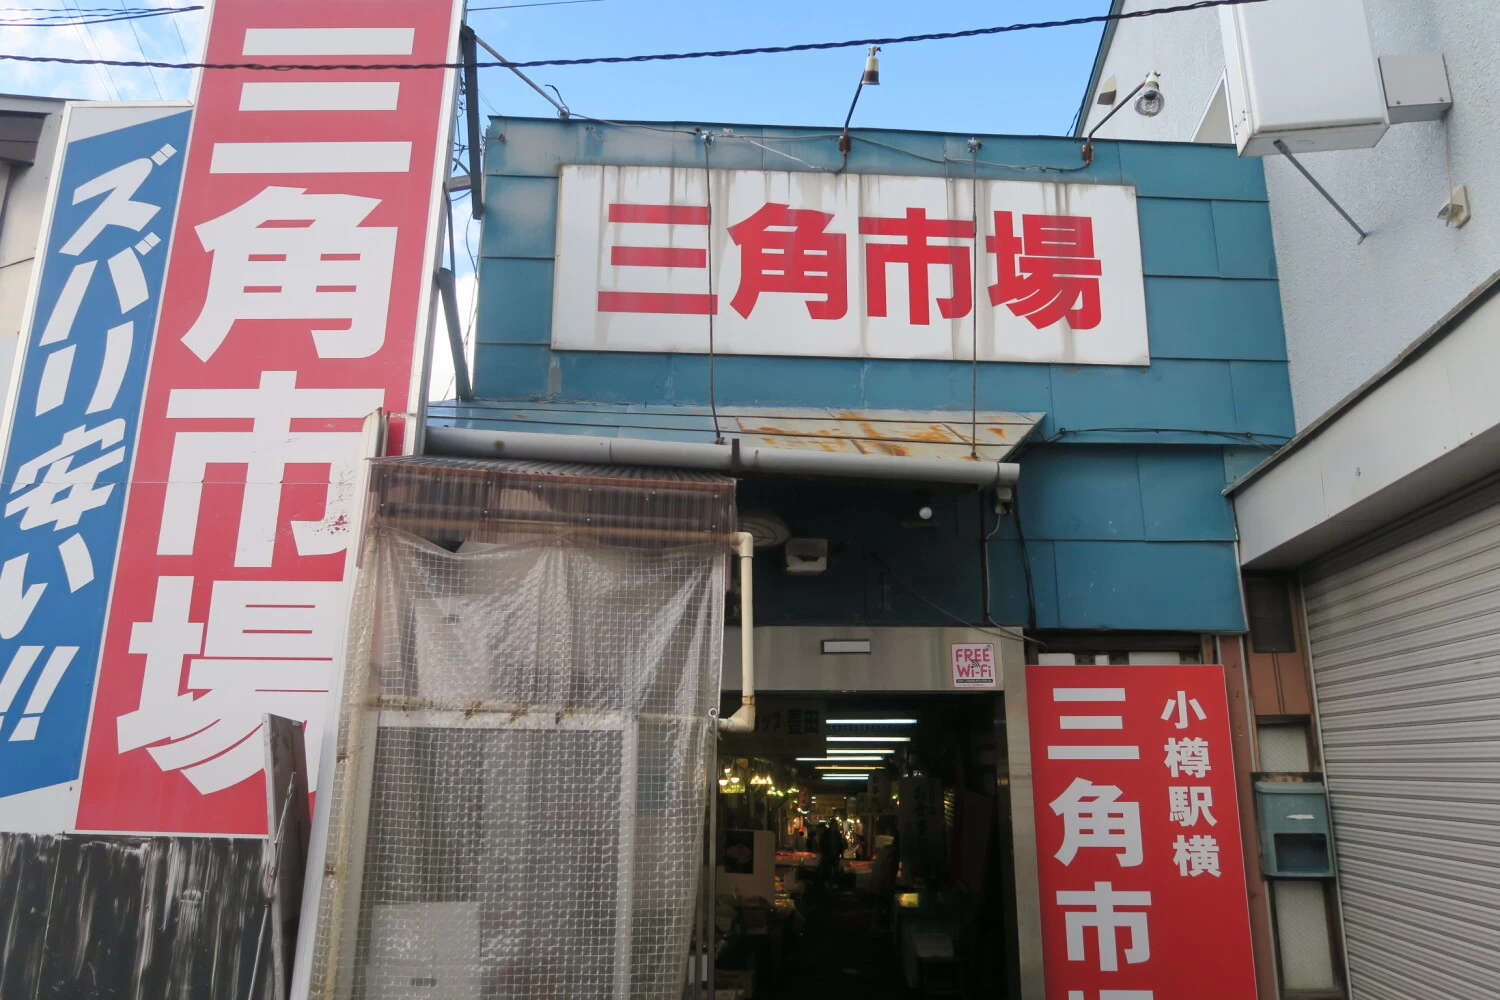 小樽三角市場の入口